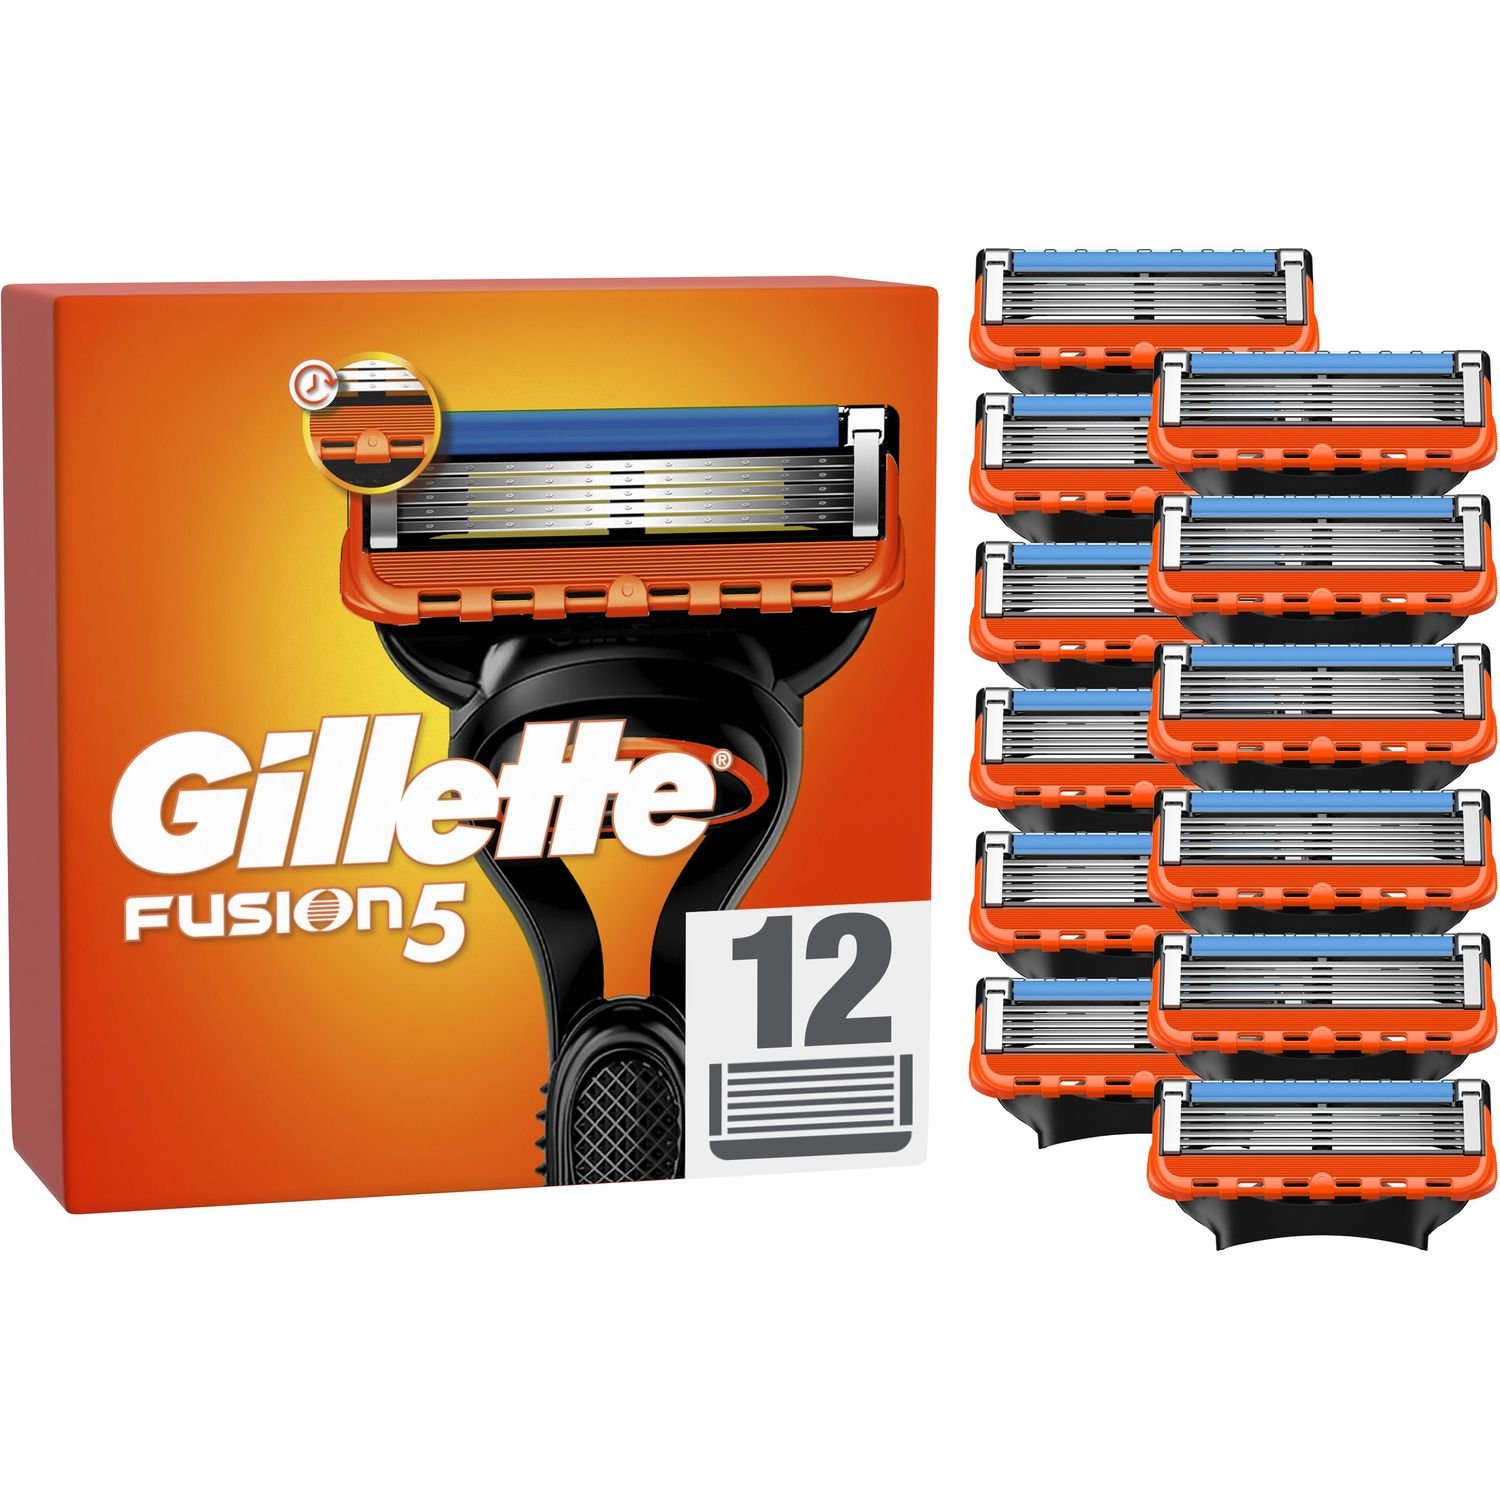 Сменные картриджи для бритья мужские Gillette Fusion5 12 шт. - фото 2